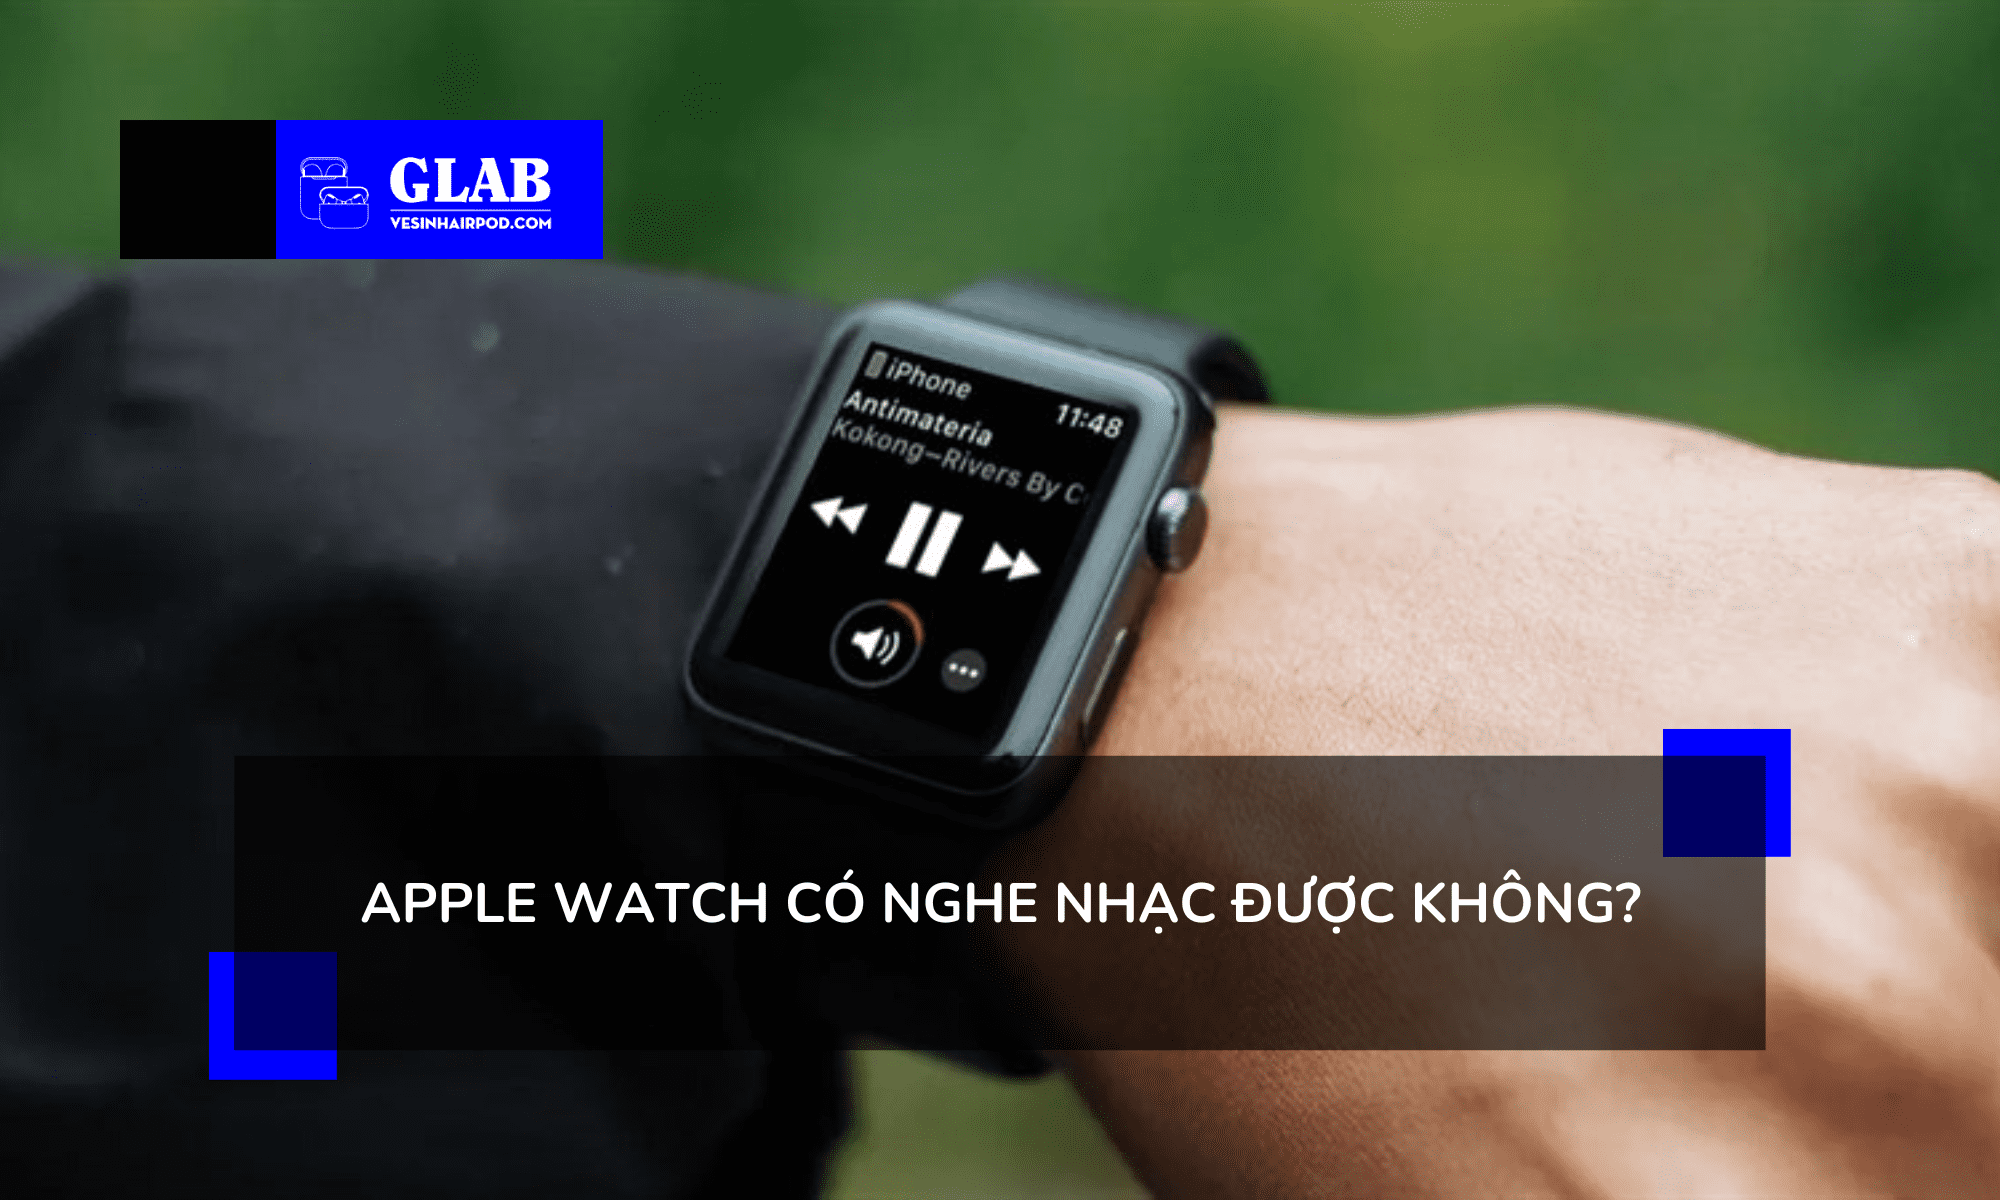 cach-phat-nhac-tren-apple-watch